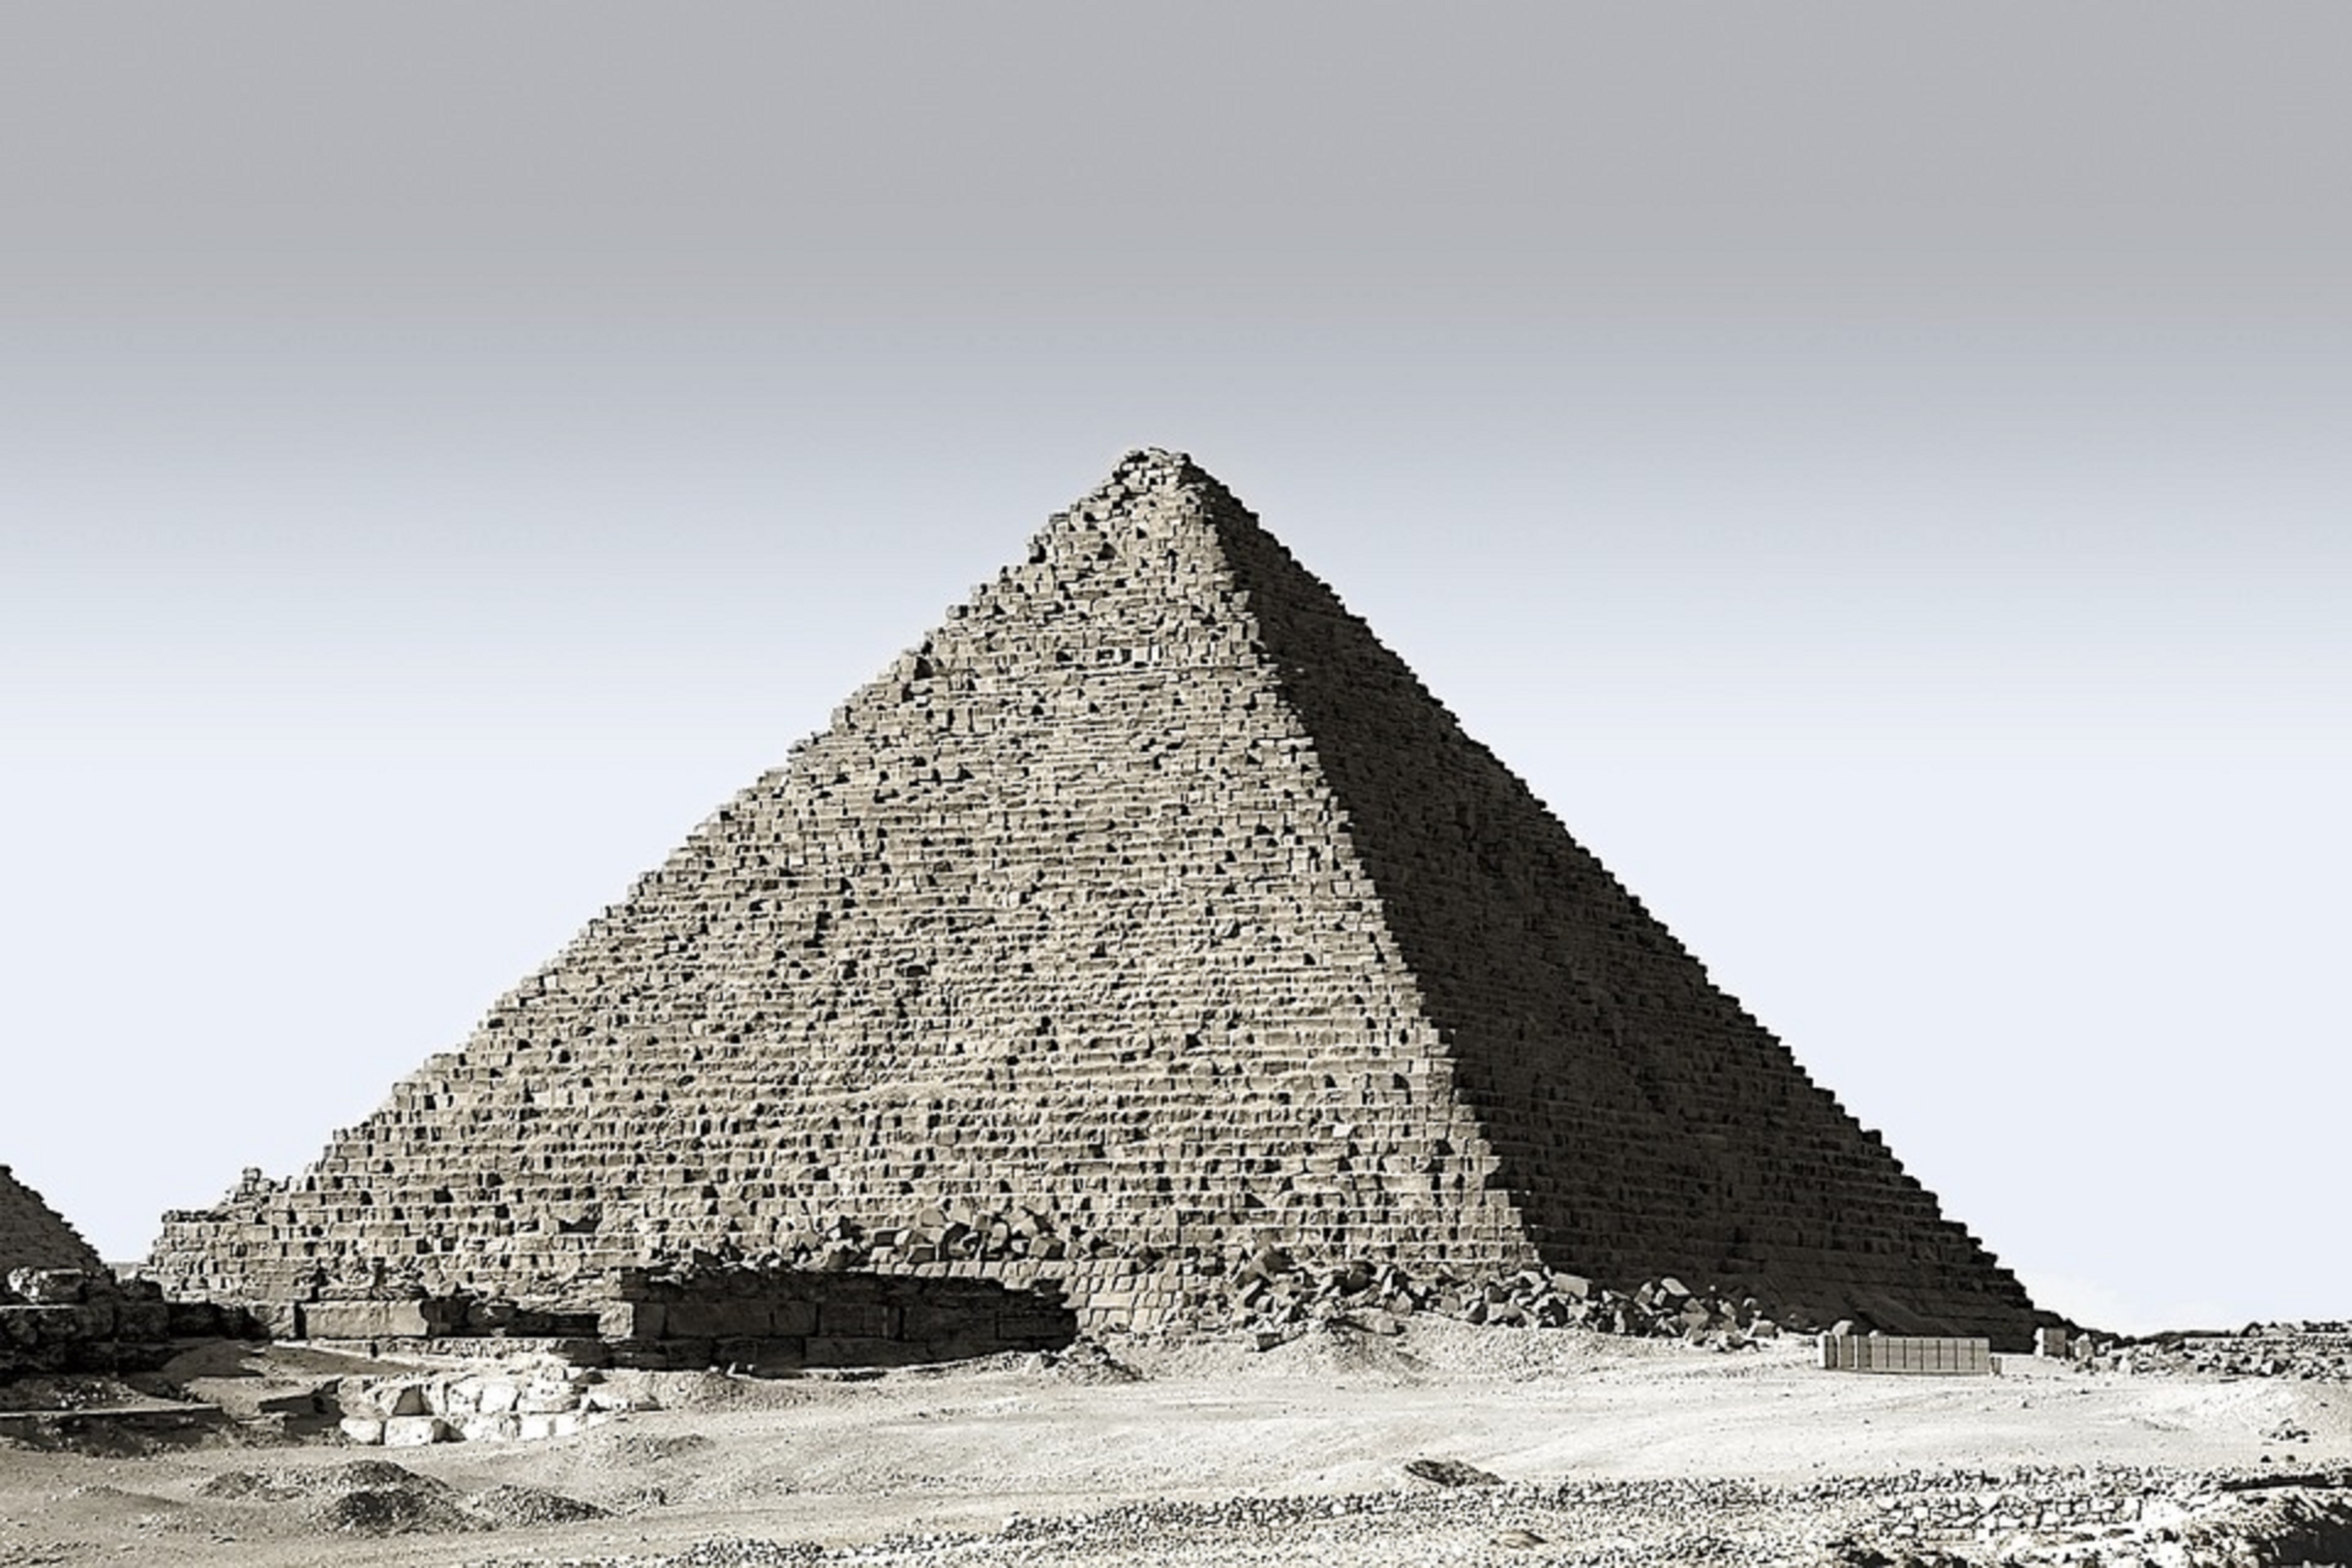 Misr piramidalari haqida. Пирамида Хеопса древний Египет. Пирамида Хуфу Египет. Пирамида Хеопса (Хуфу). Пирамида Джосера в Египте.